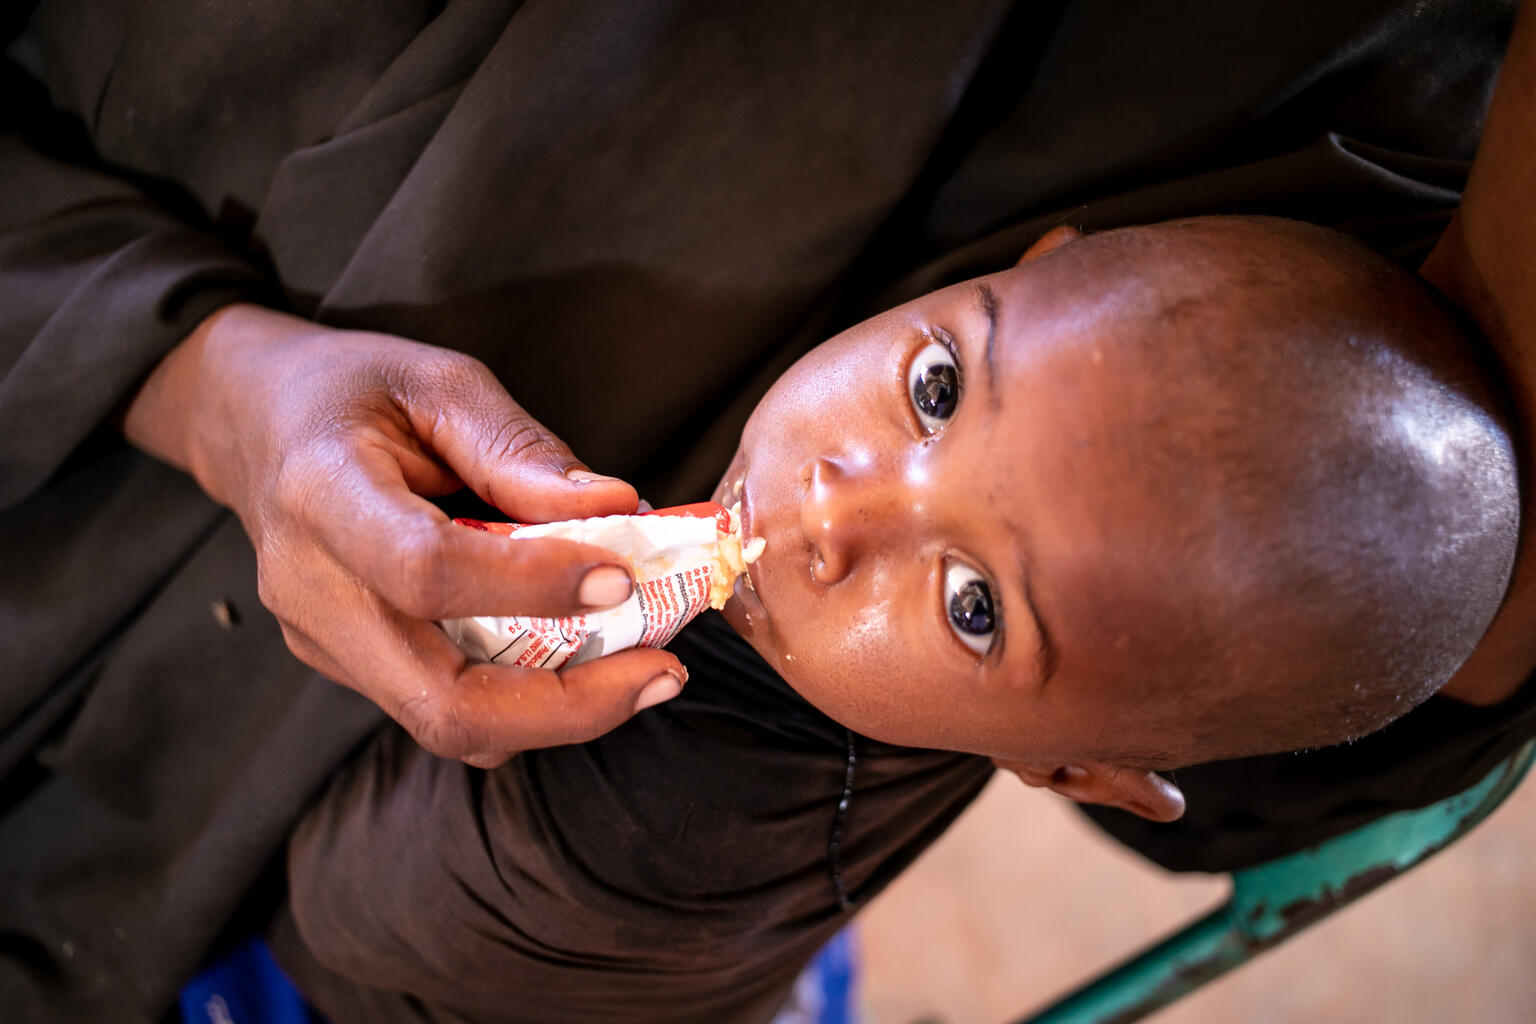 ドロー避難民キャンプ内にある保健センターで、ユニセフ支援物資の栄養補助食を食べる幼い子ども。（ソマリア、2022年2月3日撮影）